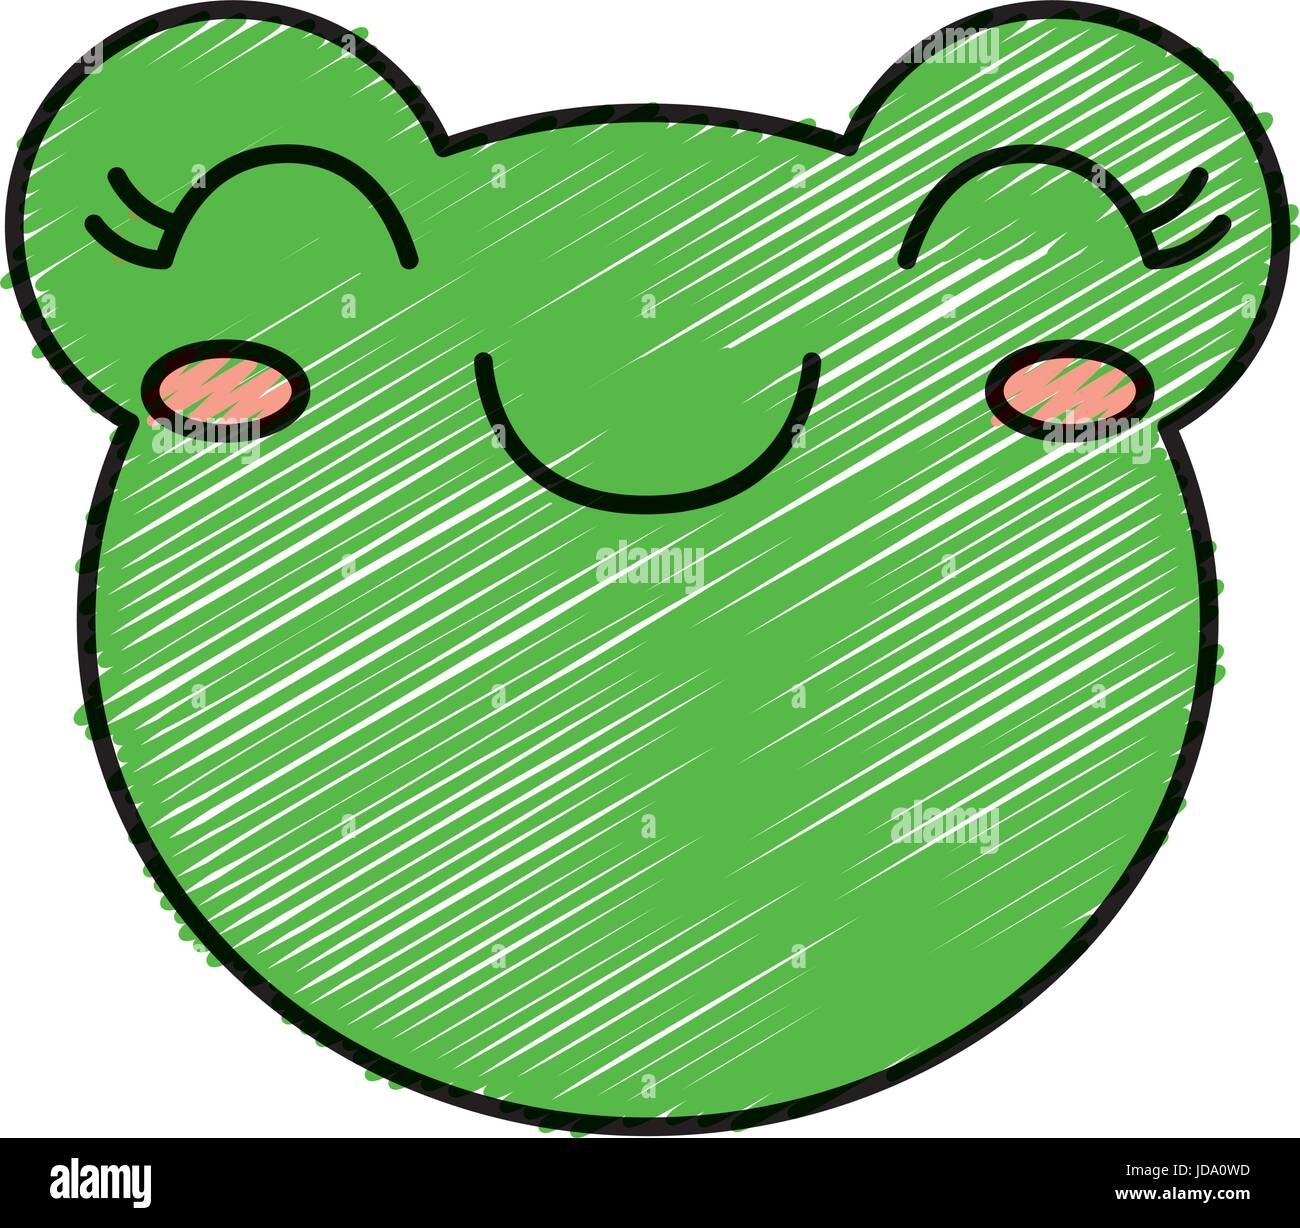 kawaii frog icon Stock Vector Image & Art - Alamy